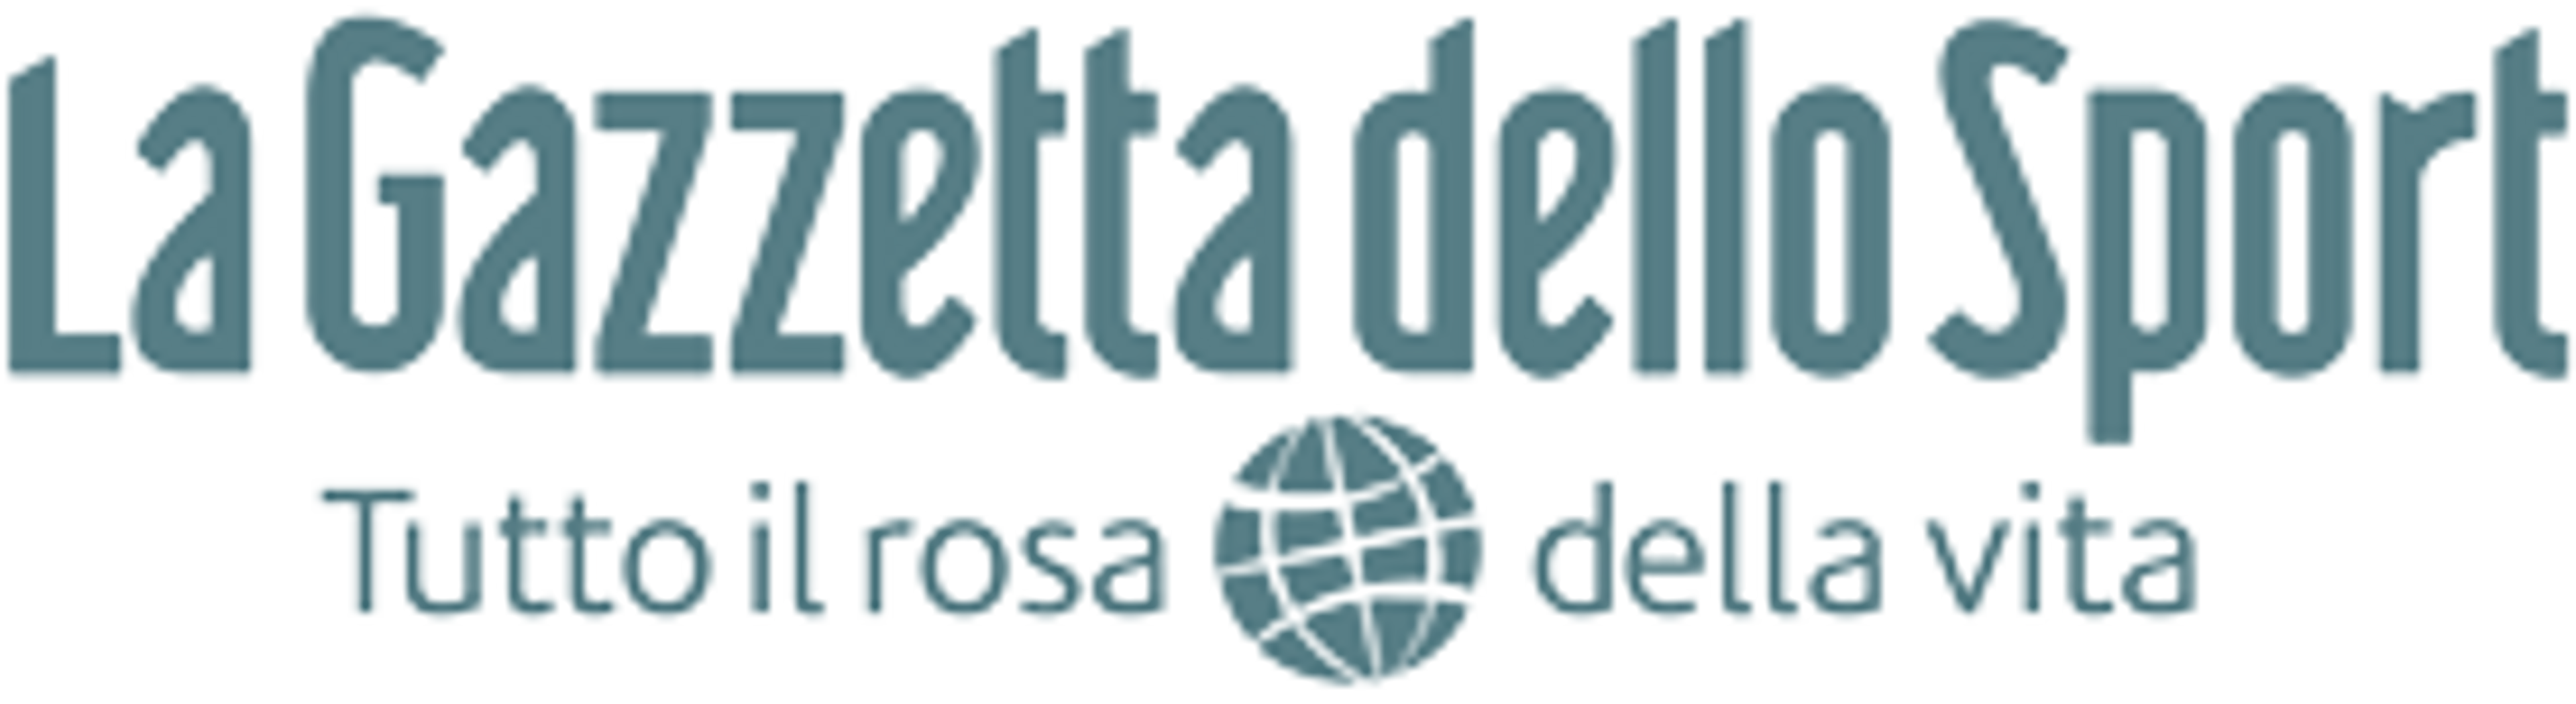 Logo La Gazzetta dello Sport